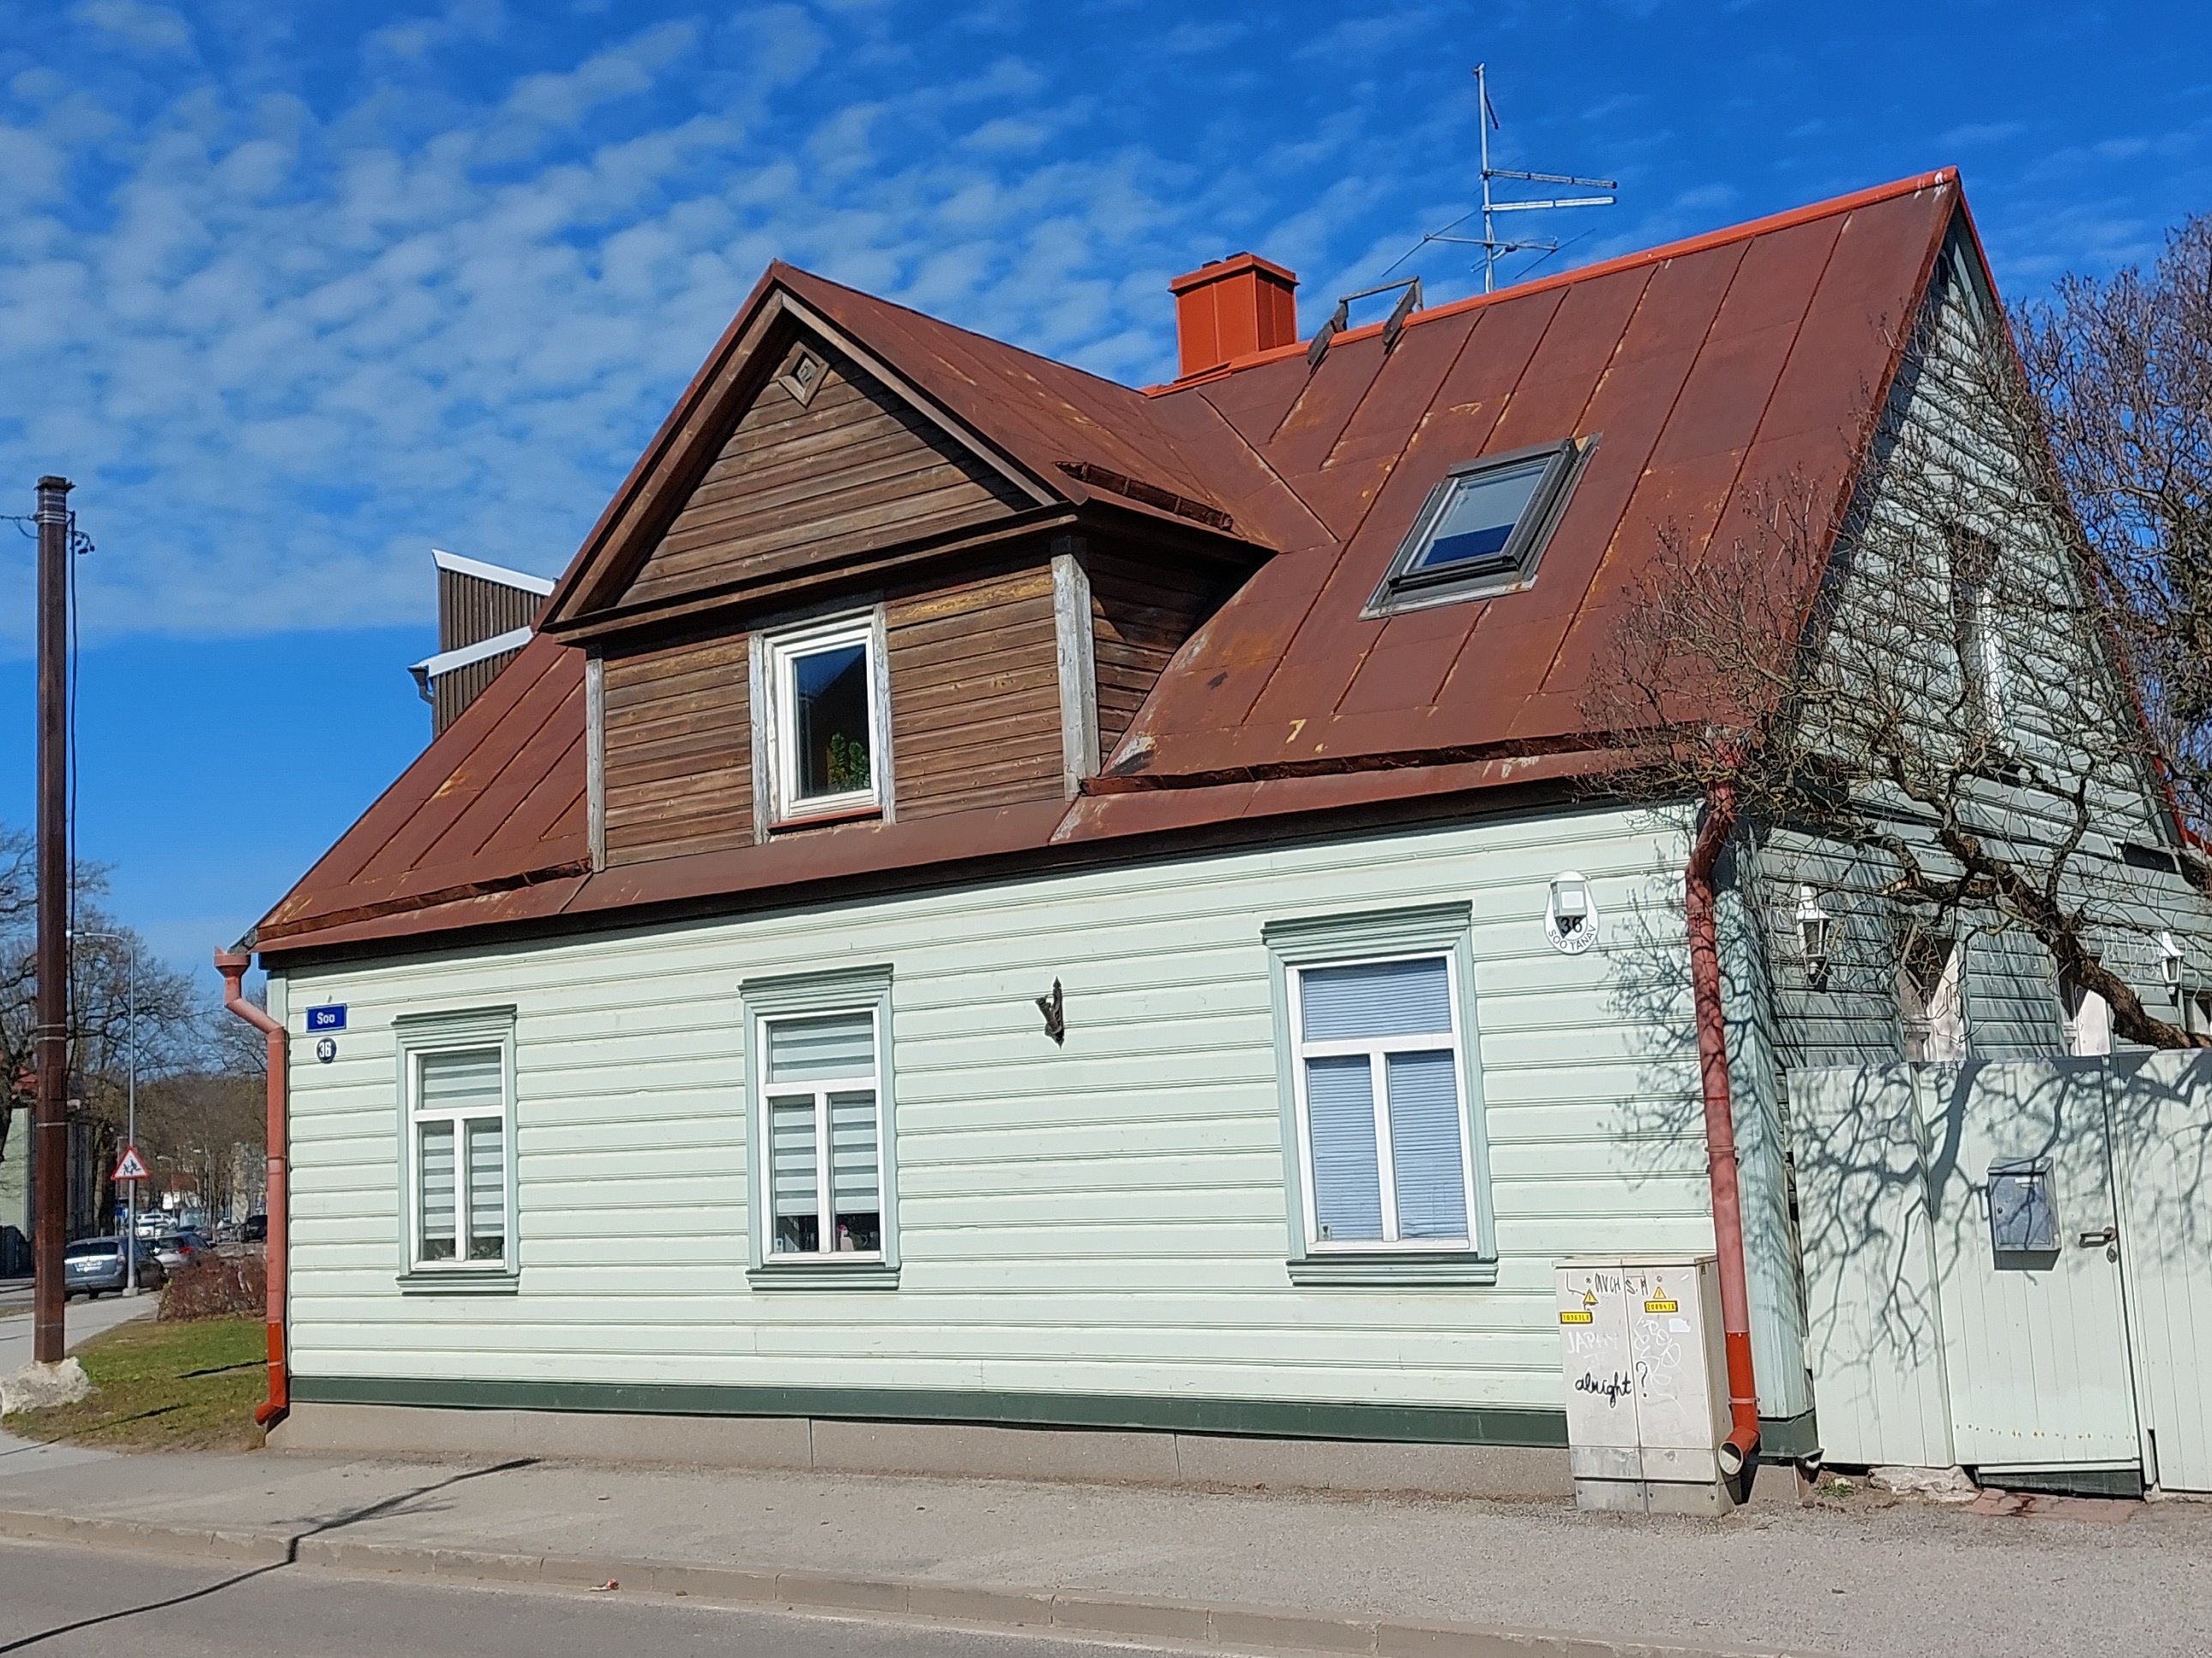 House in Nikonov Street no. 38 where Mikhail lived Kalinin. rephoto